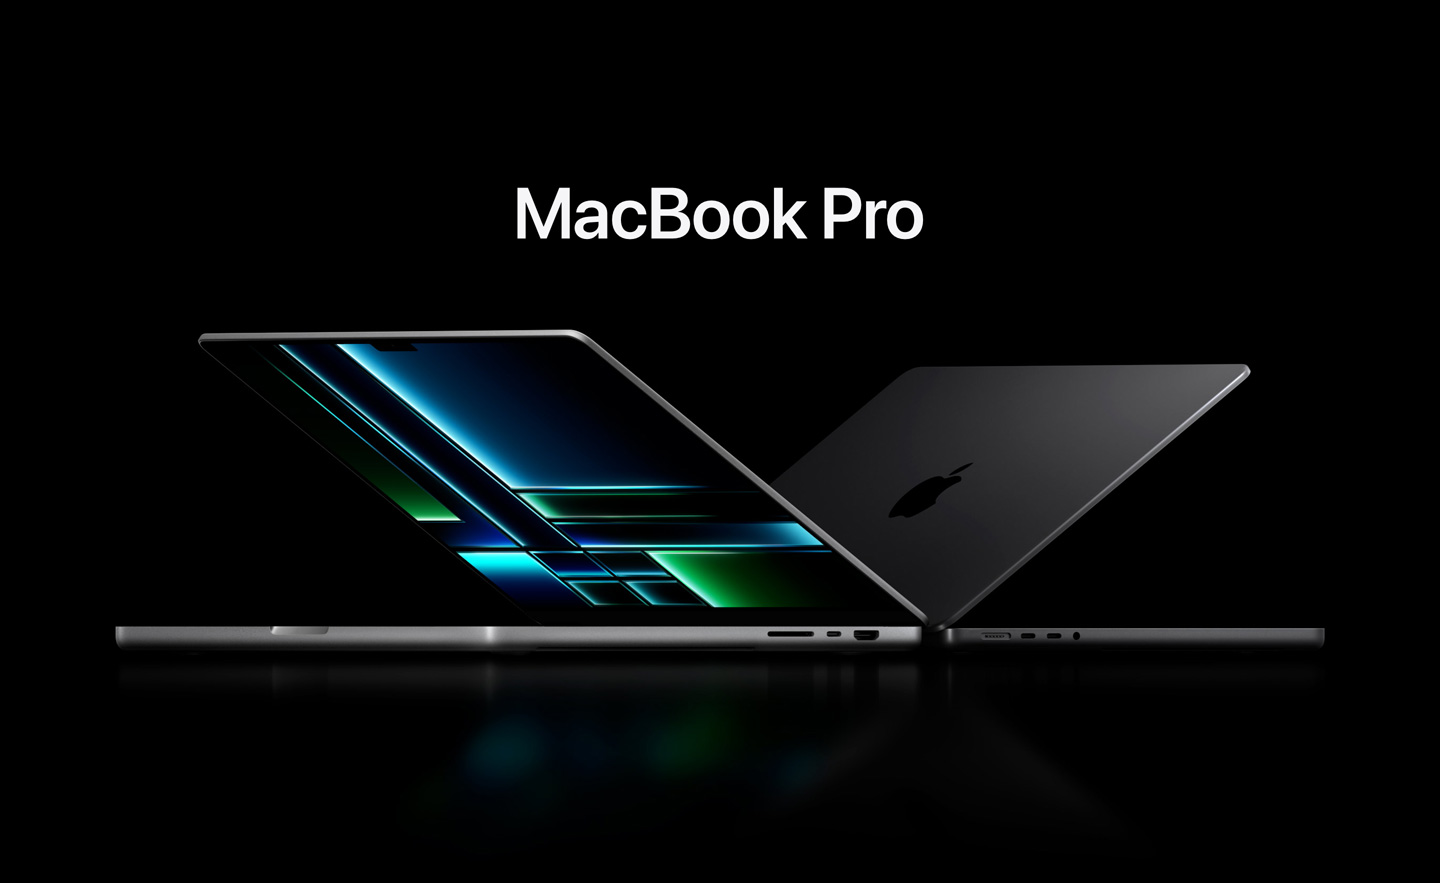 14 inç ve 16 inç MacBook Pro